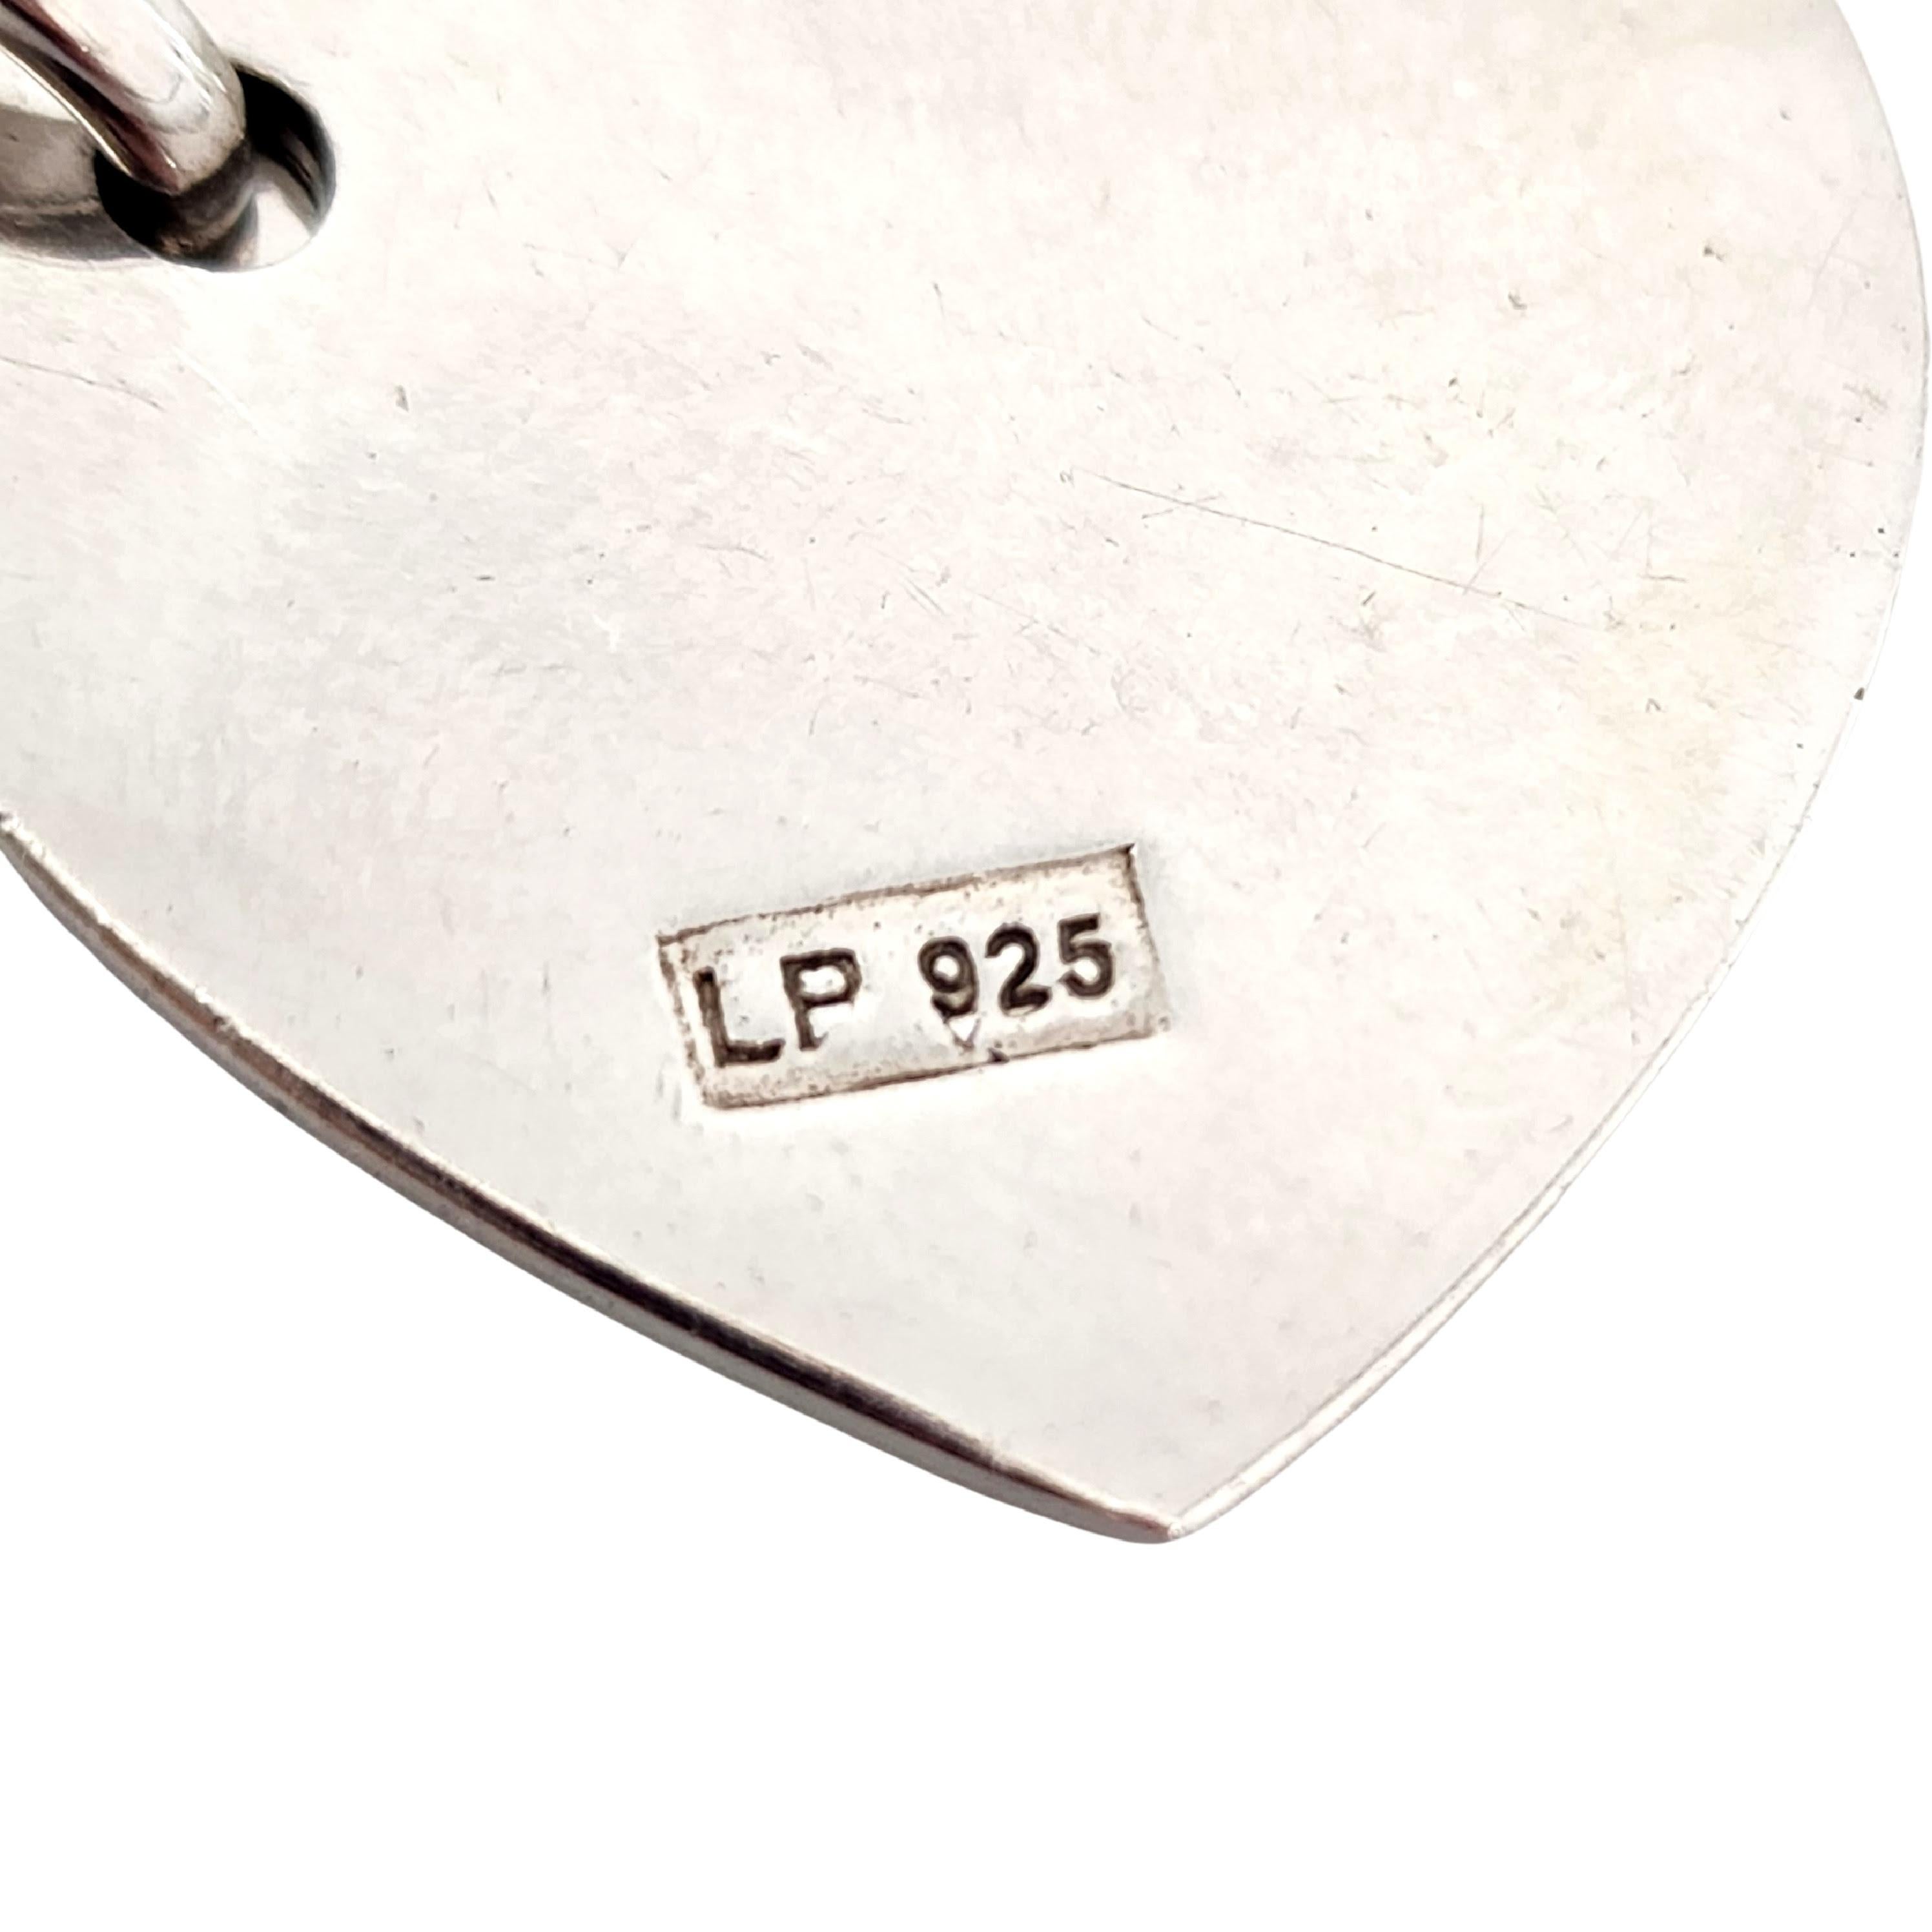 Designer LP 925 Sterling Silver Lettere D'Amore Love Letters Necklace #13372 For Sale 7